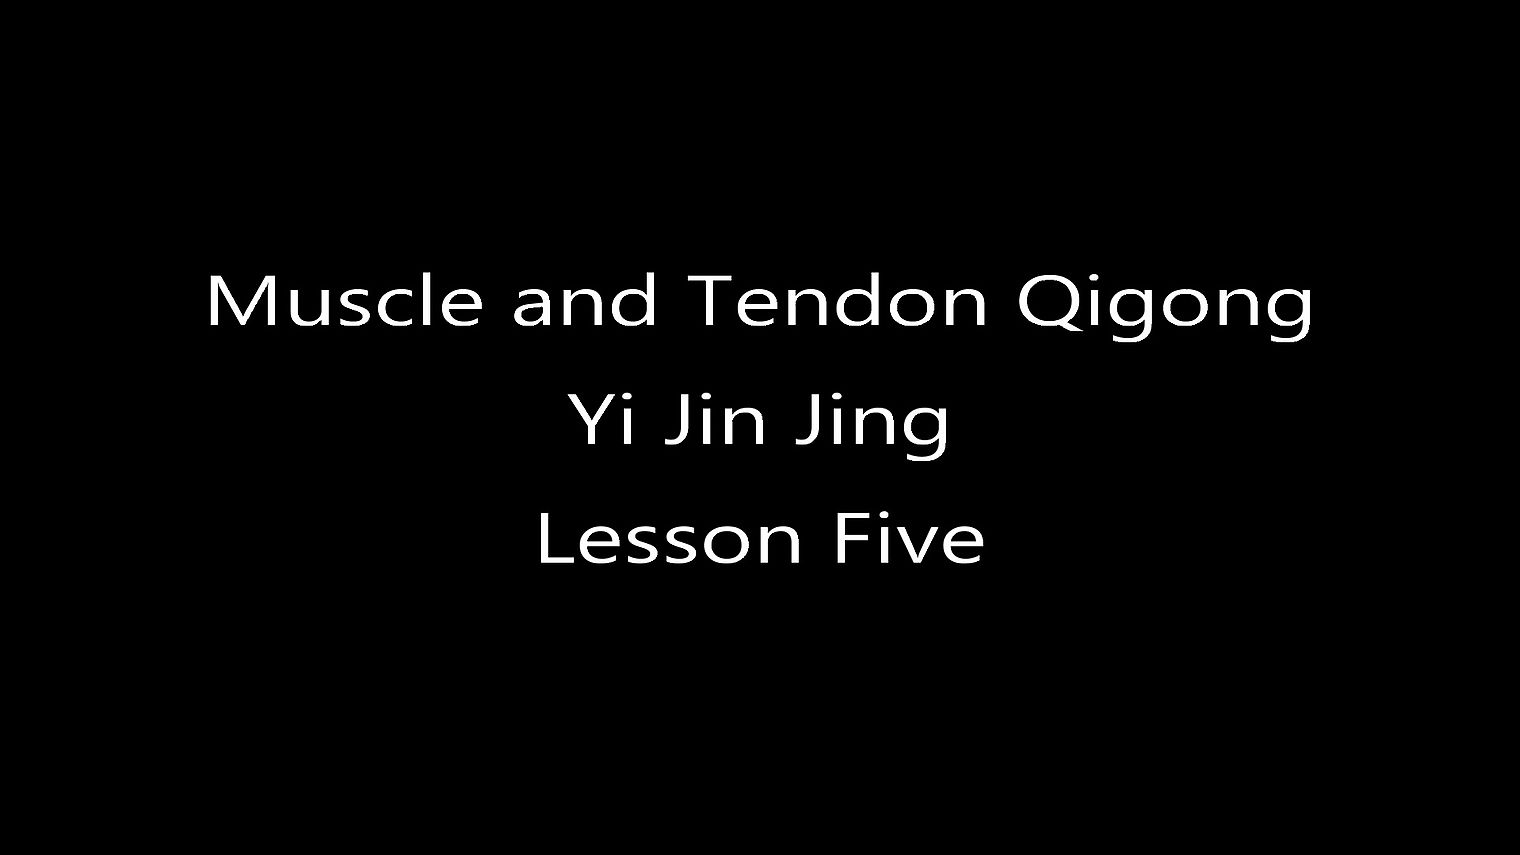 Yi Jin Jing - Muscle and Tendon Qigong